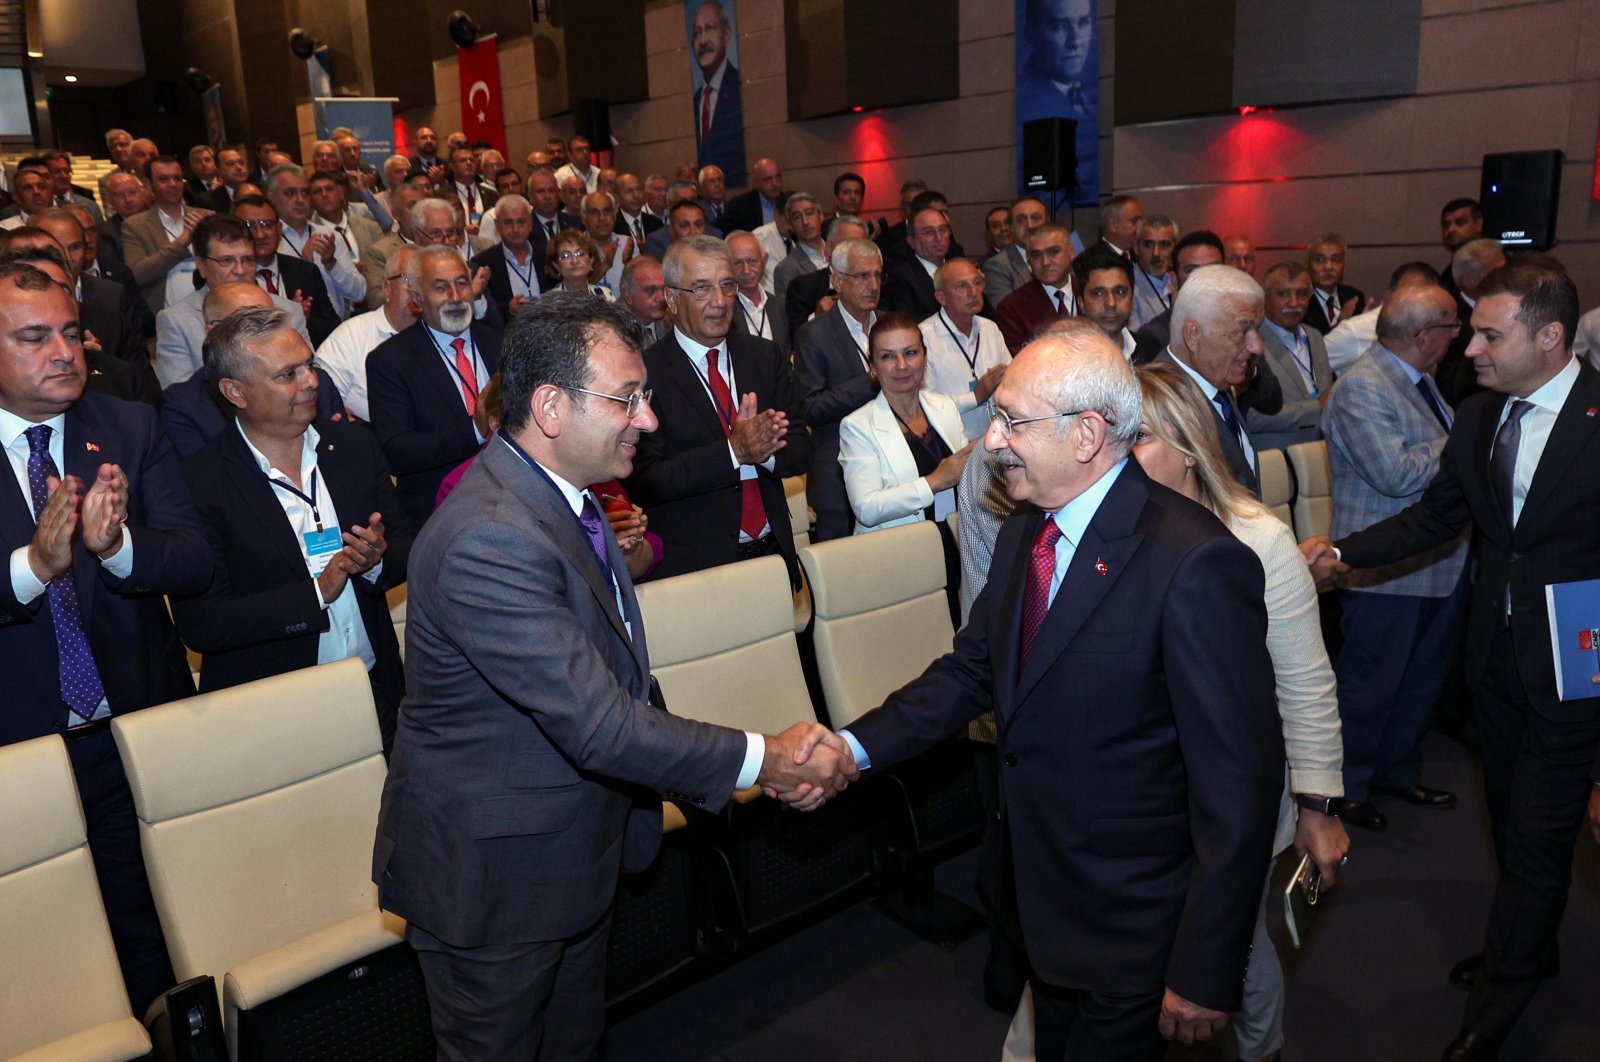 Kemal Kılıçdaroğlu (R) shakes hands with Istanbul Mayor Ekrem Imamoğlu during the event in the capital Ankara, Türkiye, July 22, 2023. (DHA Photo)